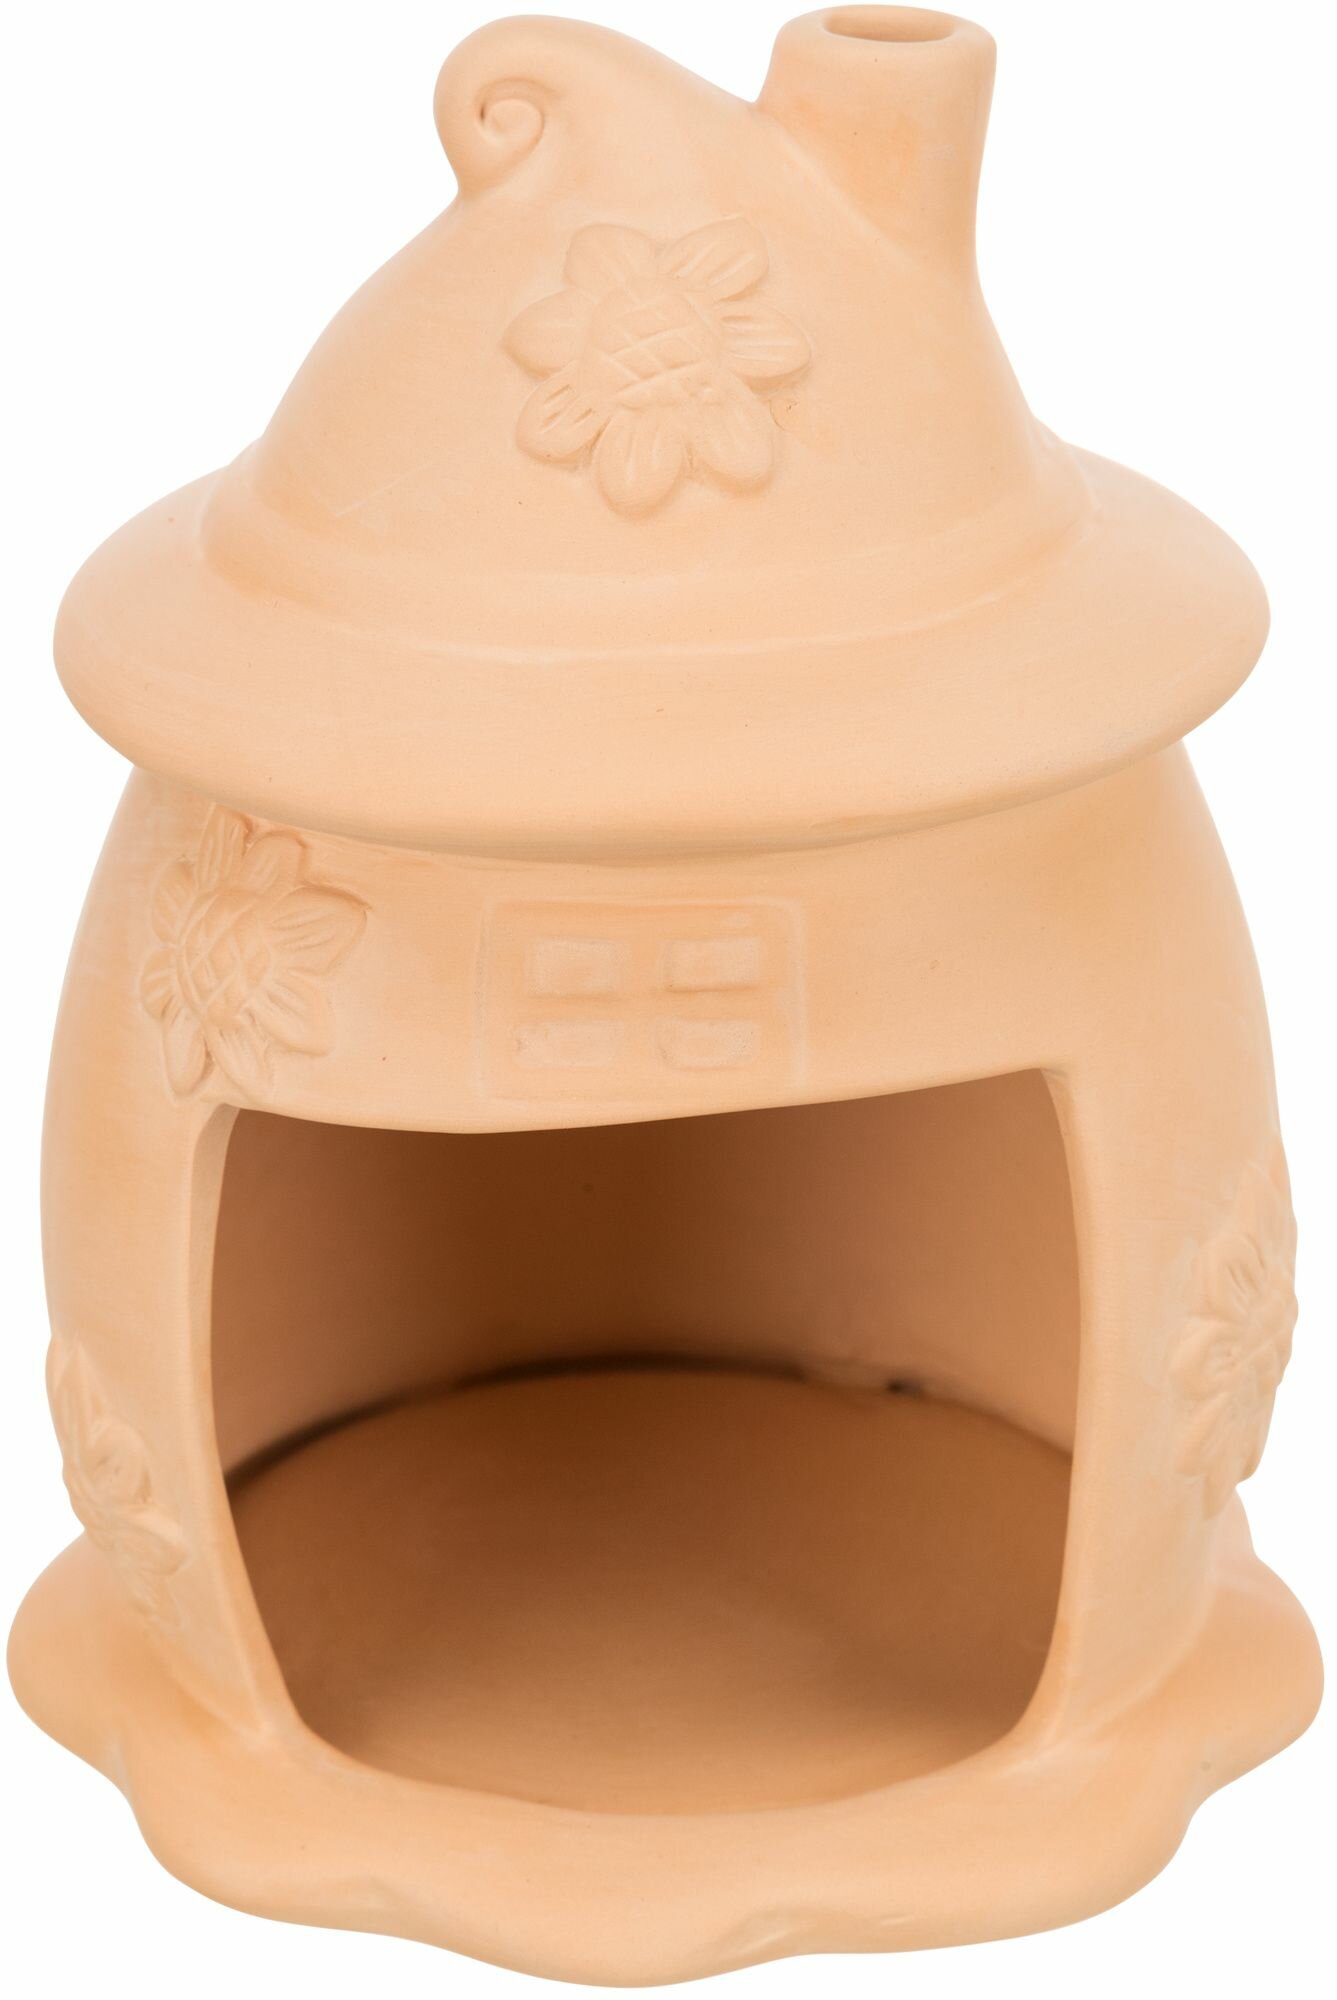 Домик для мышей, керамика, ф 11 х 14 см, терракотовый, Trixie (товары для животных, 61372)